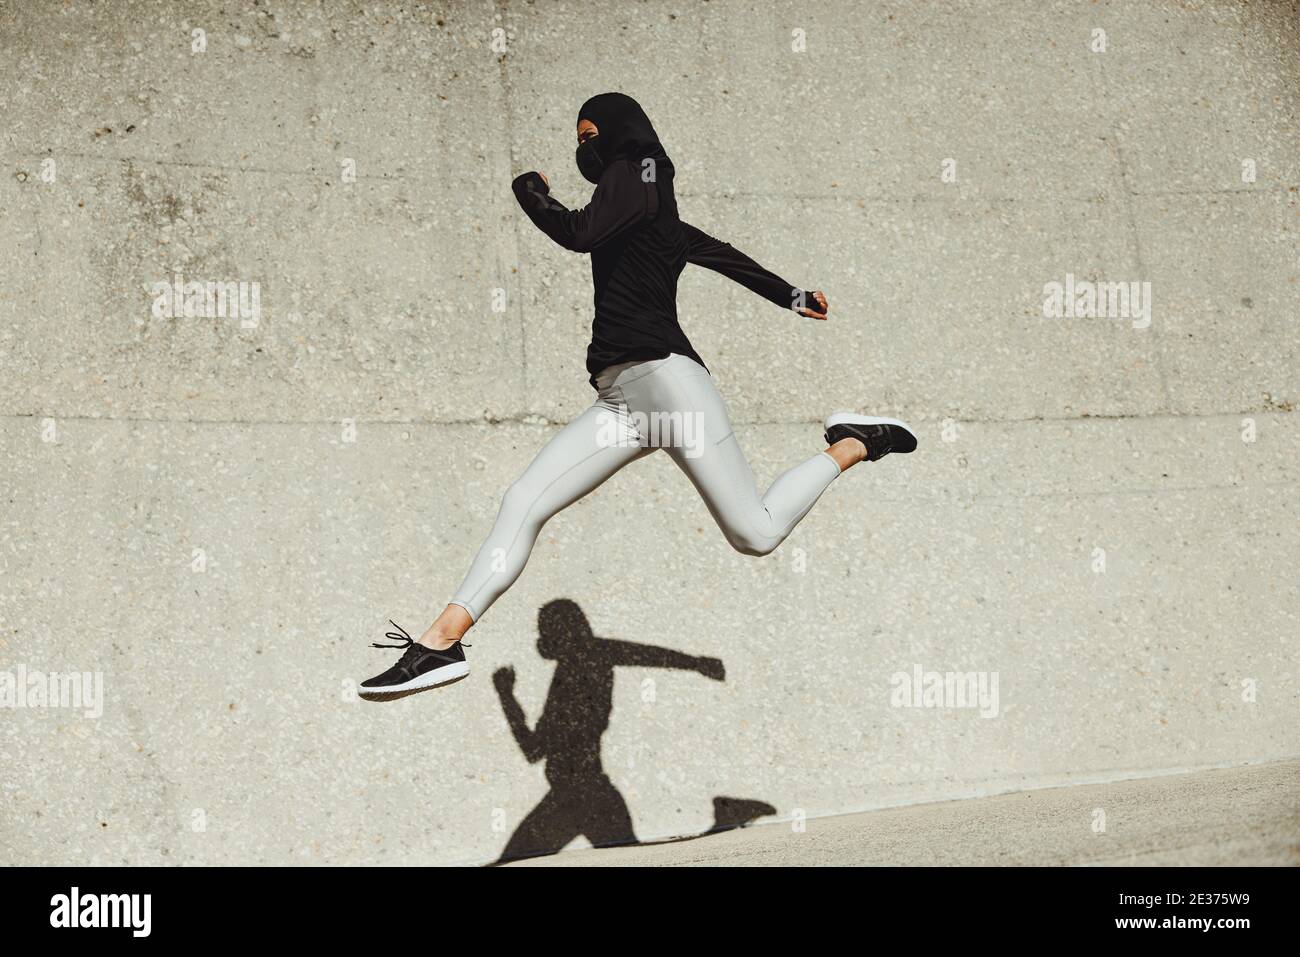 Frau trägt Hijab Trainingsbekleidung und Schutzmaske Ausübung im Freien. Frau beim Laufen und Springen in Sportkleidung. Stockfoto